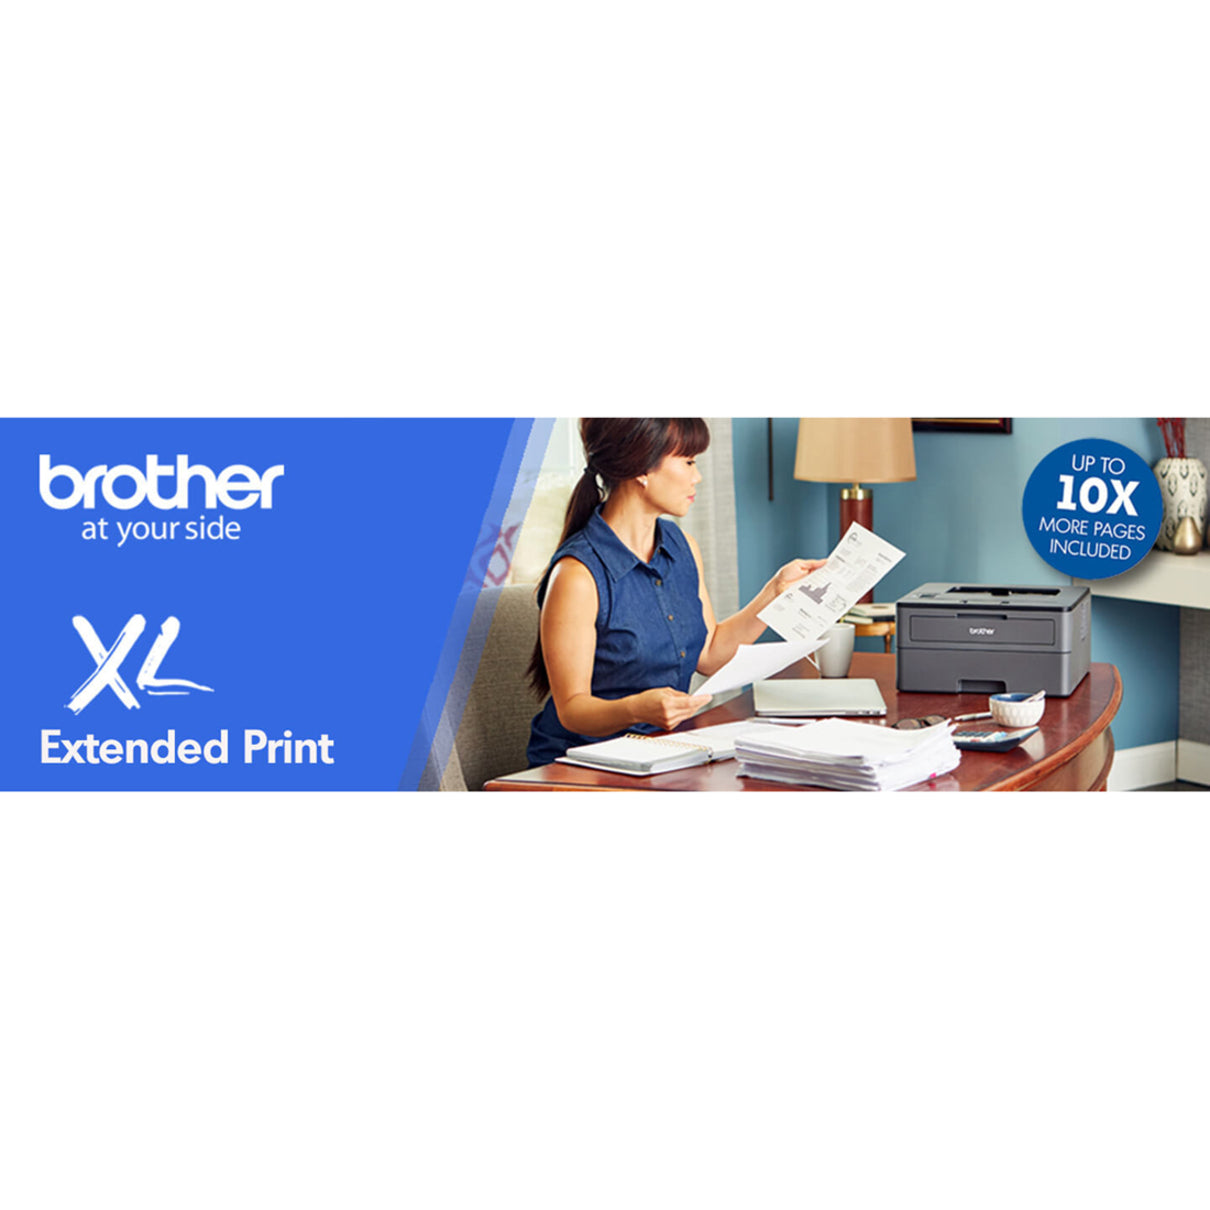 Brother HL-L2370dwXL HL-L2370DWXL Laser Printer, Monochrome, Automatic Duplex Printing, Wireless Printing, 36 ppm, 2400 x 600 dpi